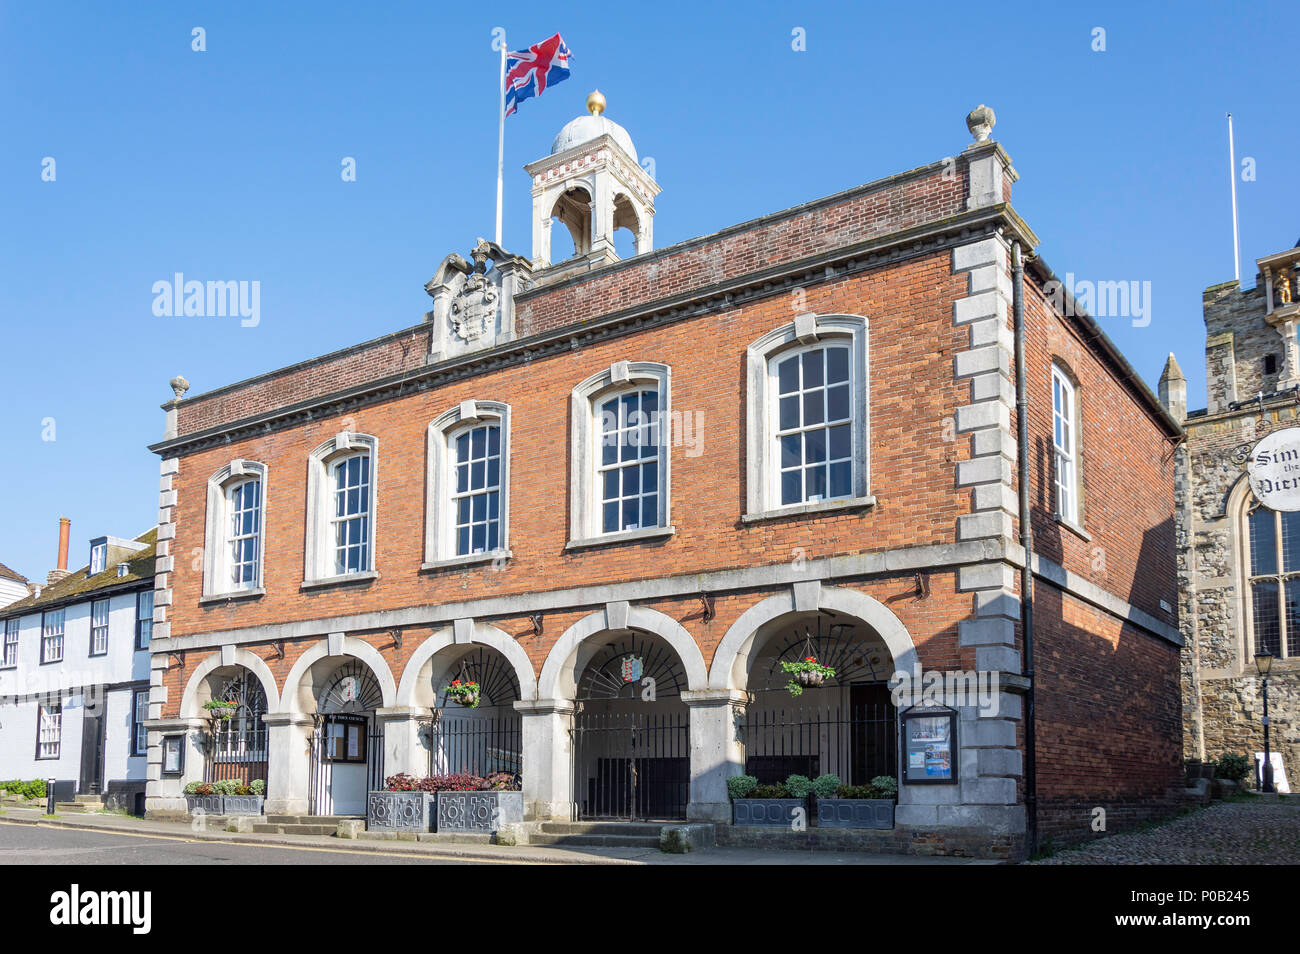 Bâtiment du conseil de ville de seigle, Market Street, Rye, East Sussex, Angleterre, Royaume-Uni Banque D'Images